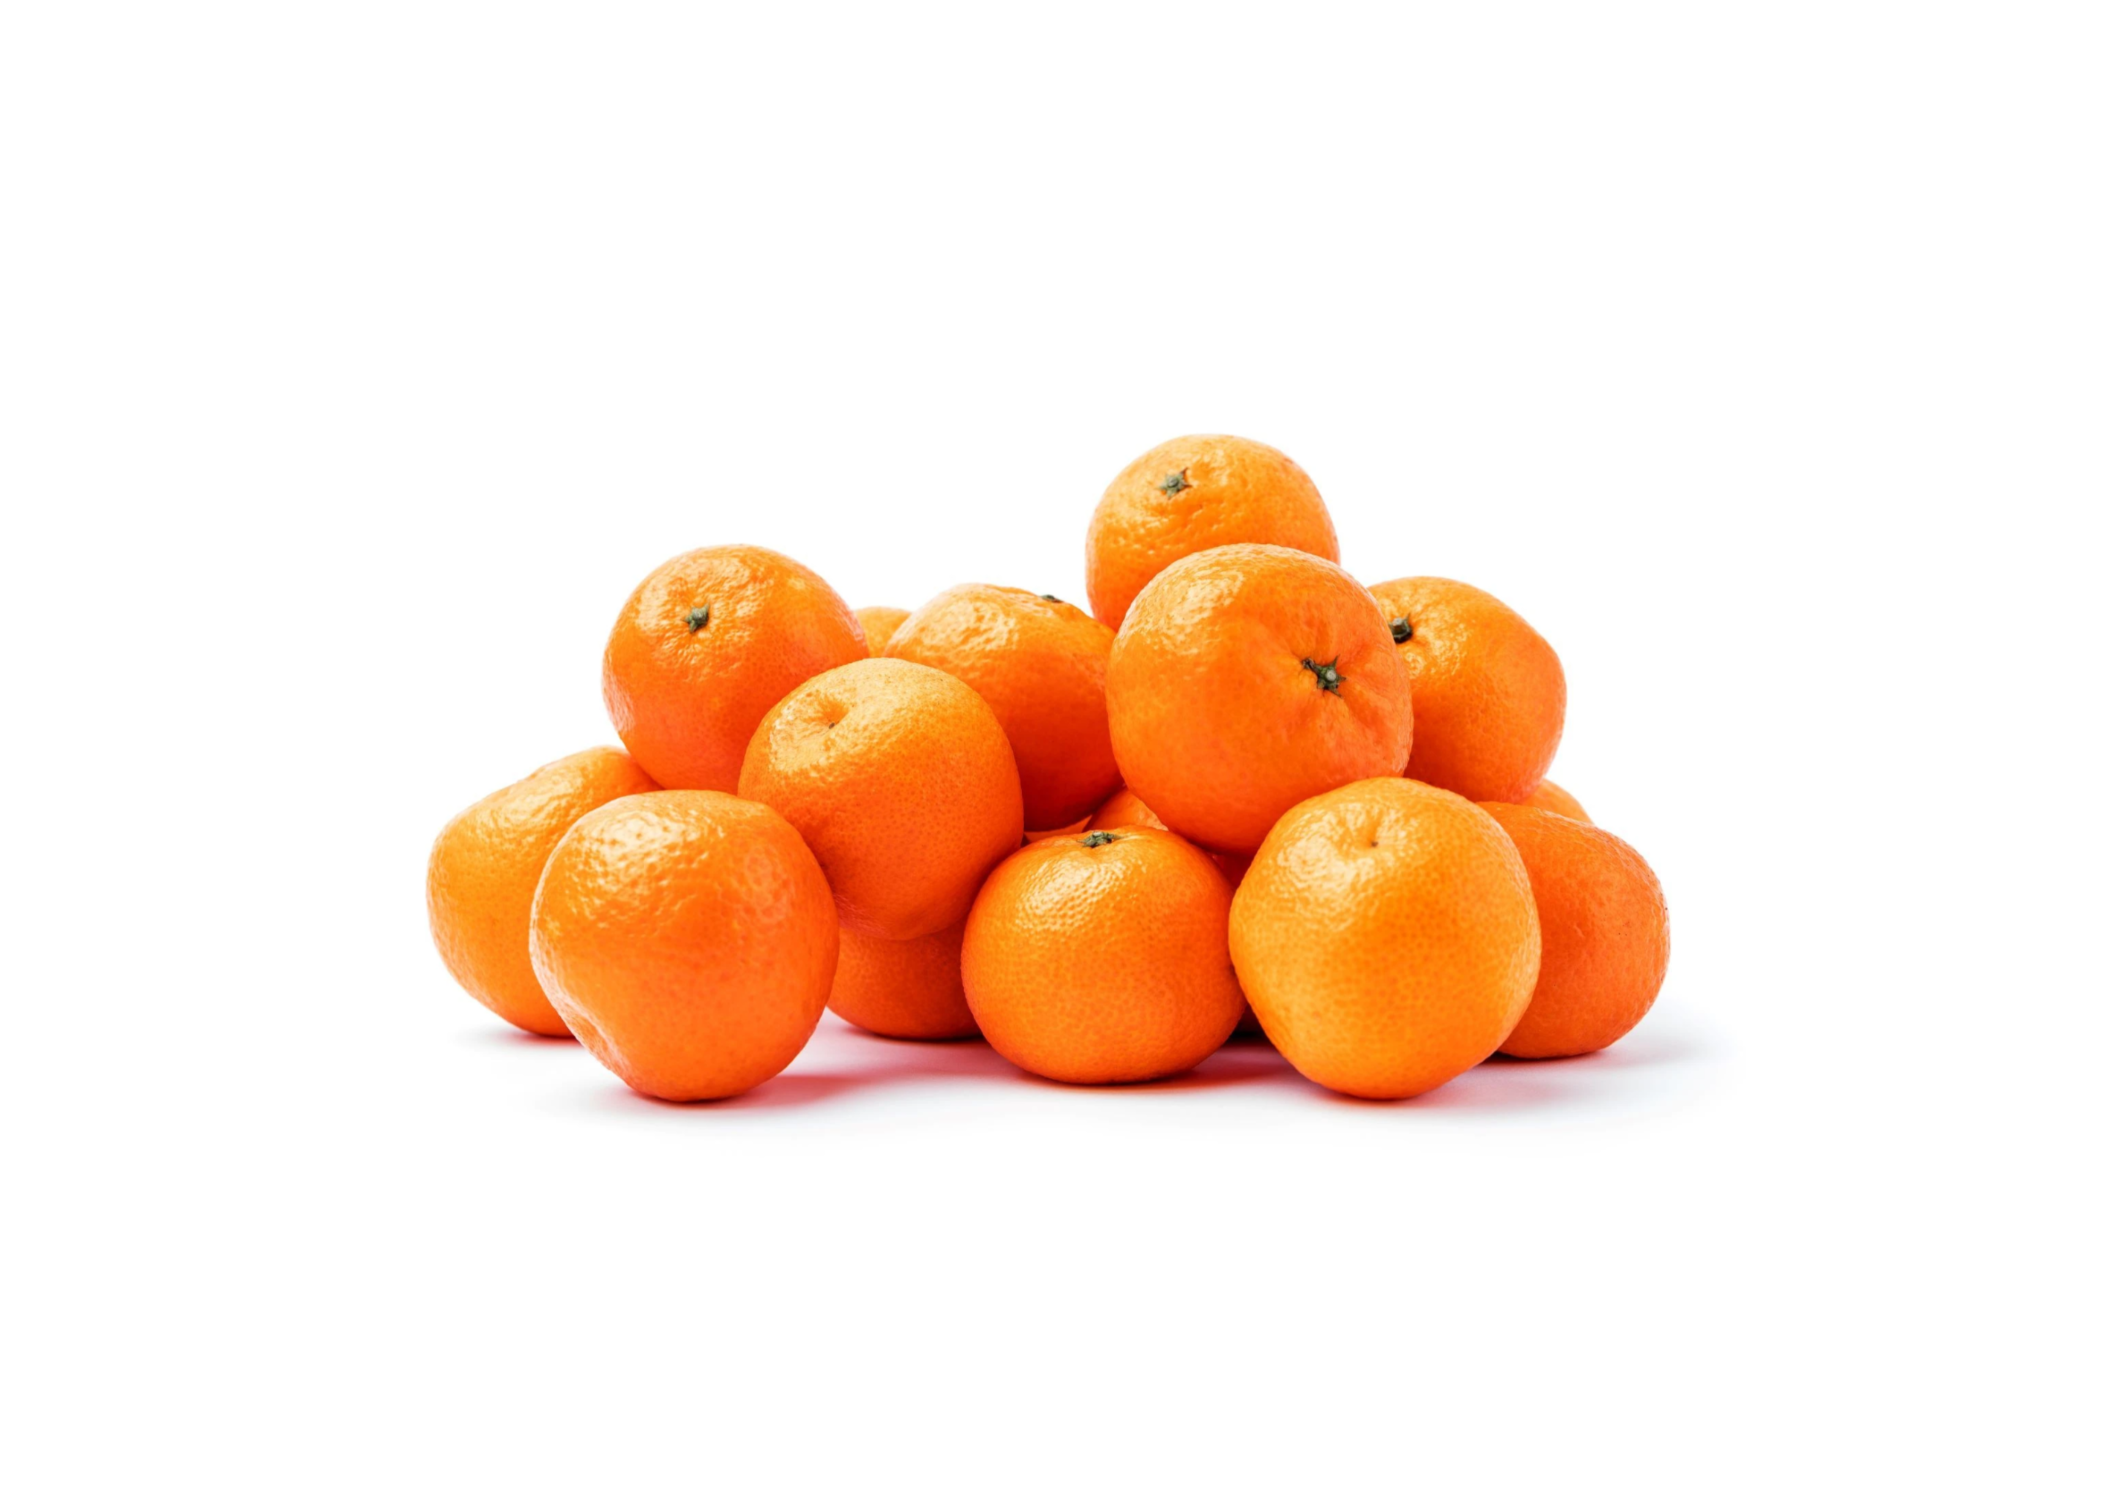 Mandarins 3 LB